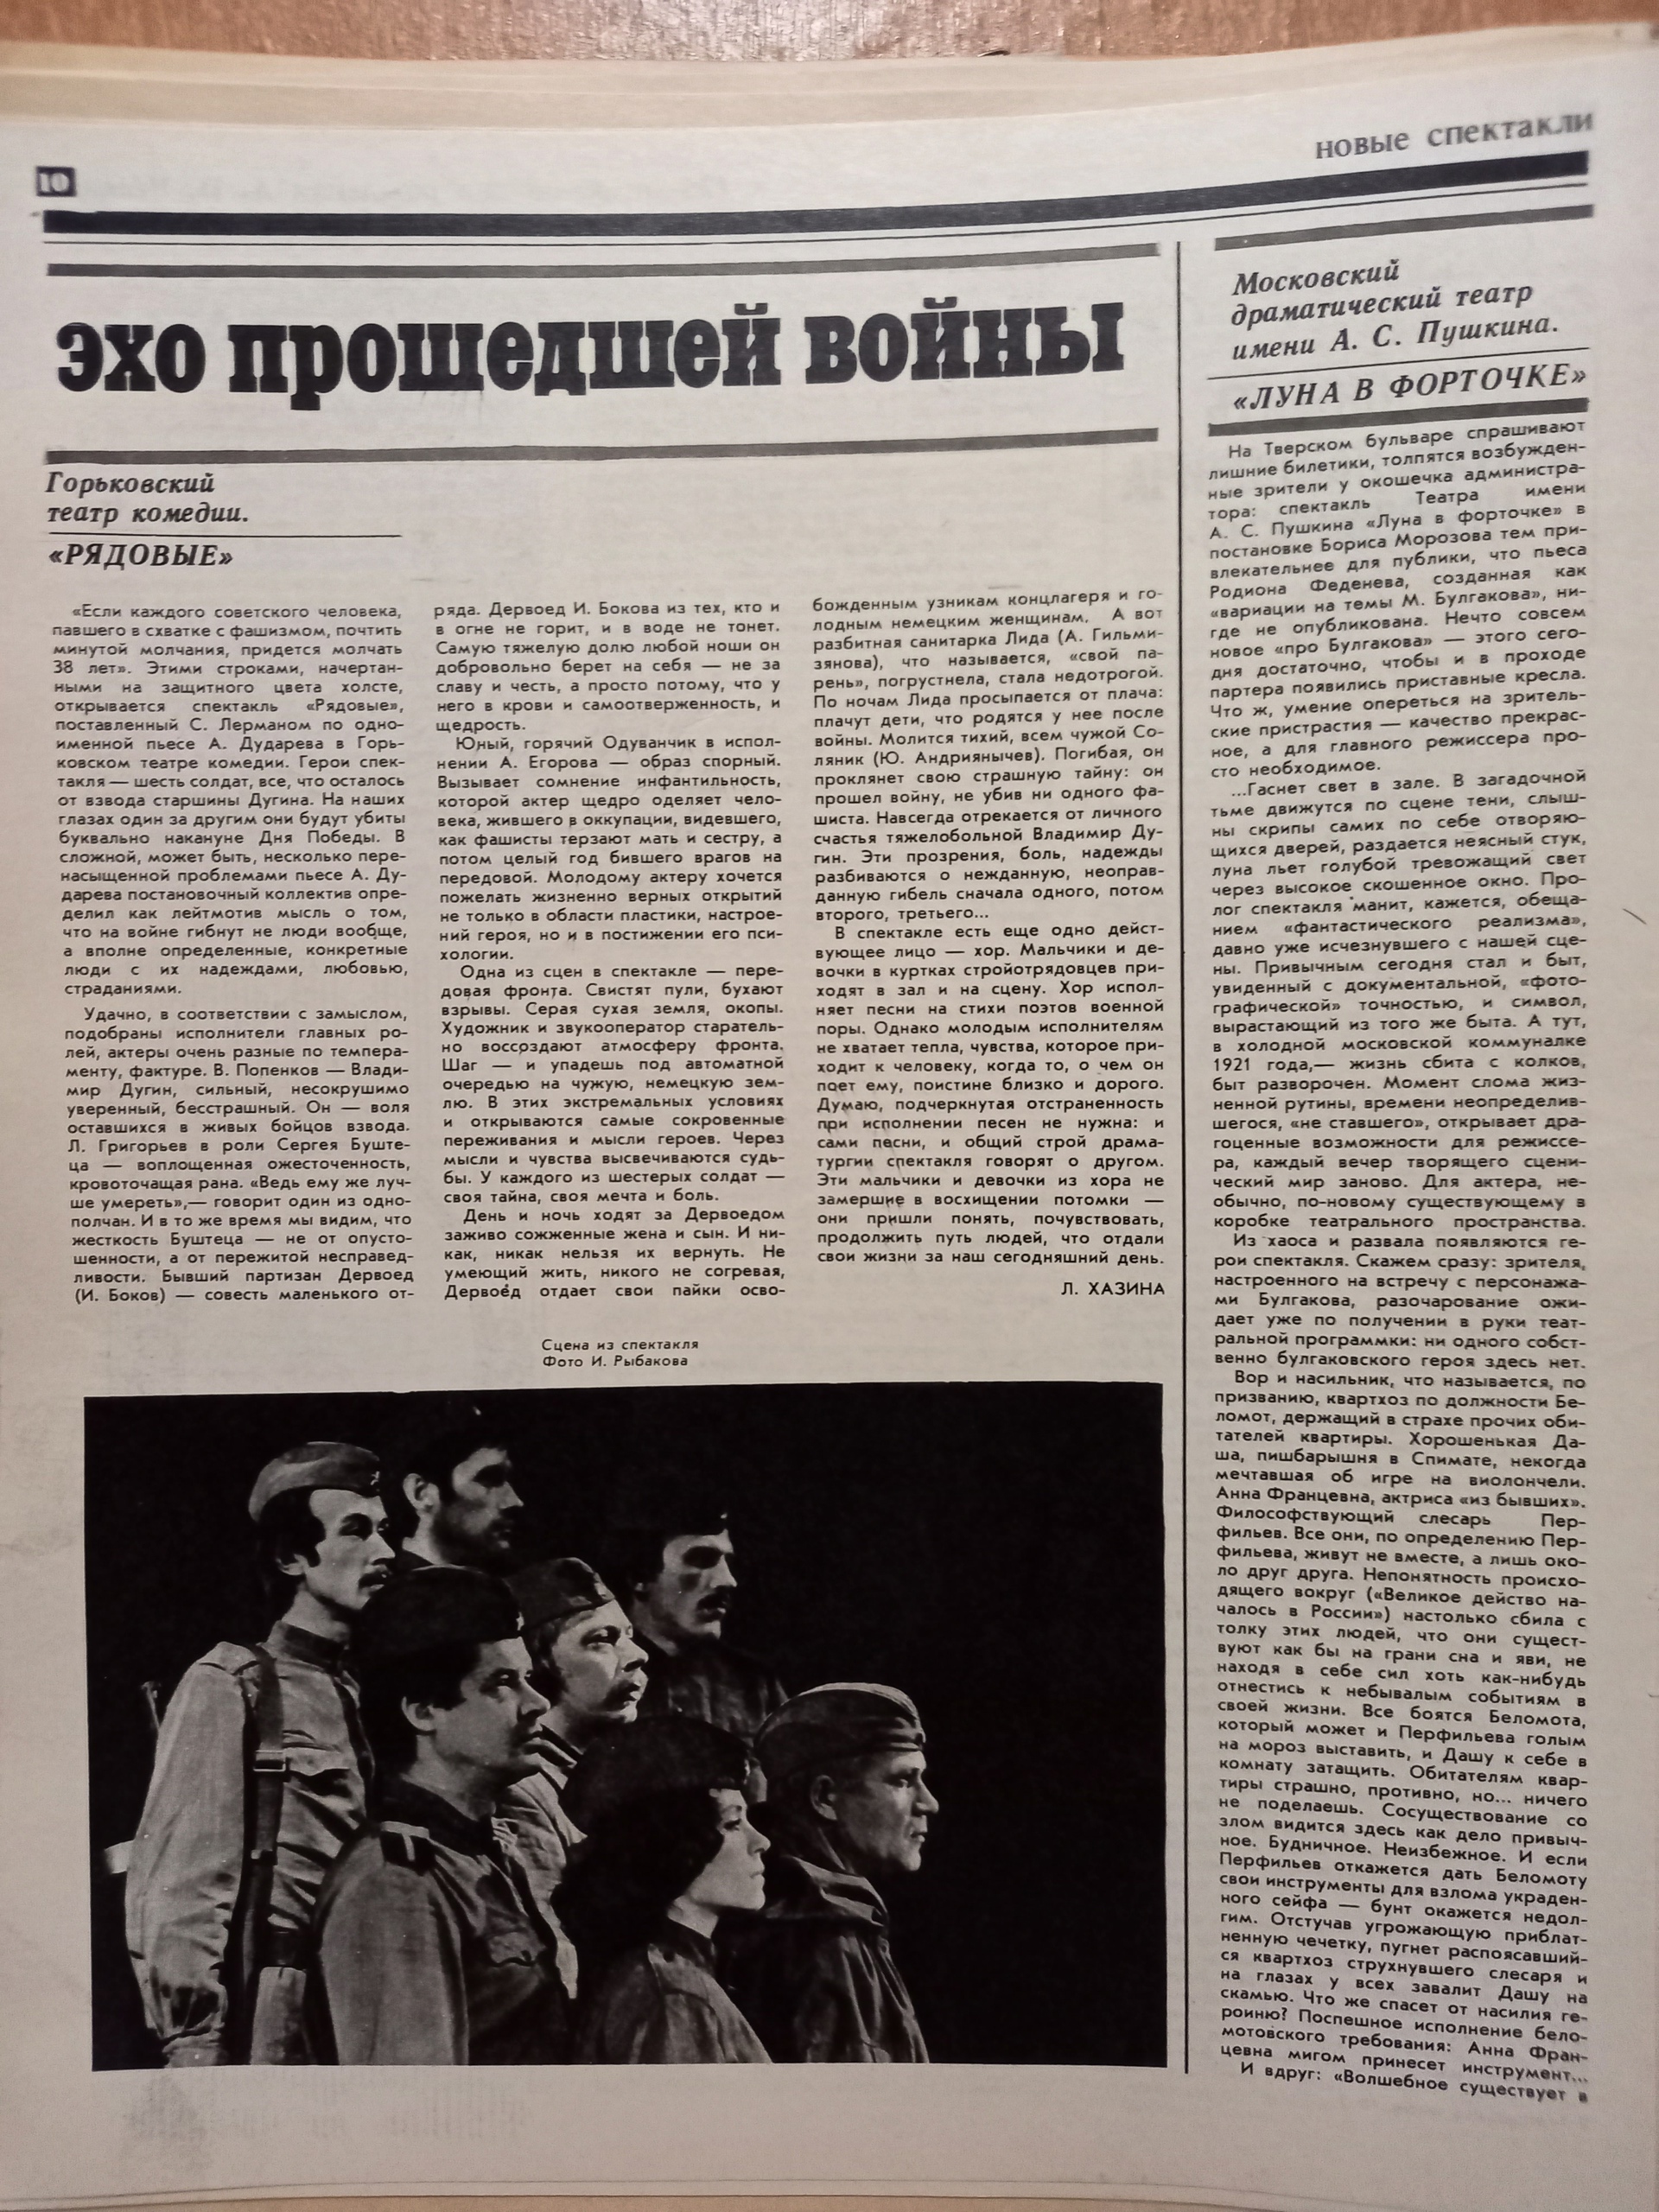 "Рядовые" "Луна в форточке" 1985